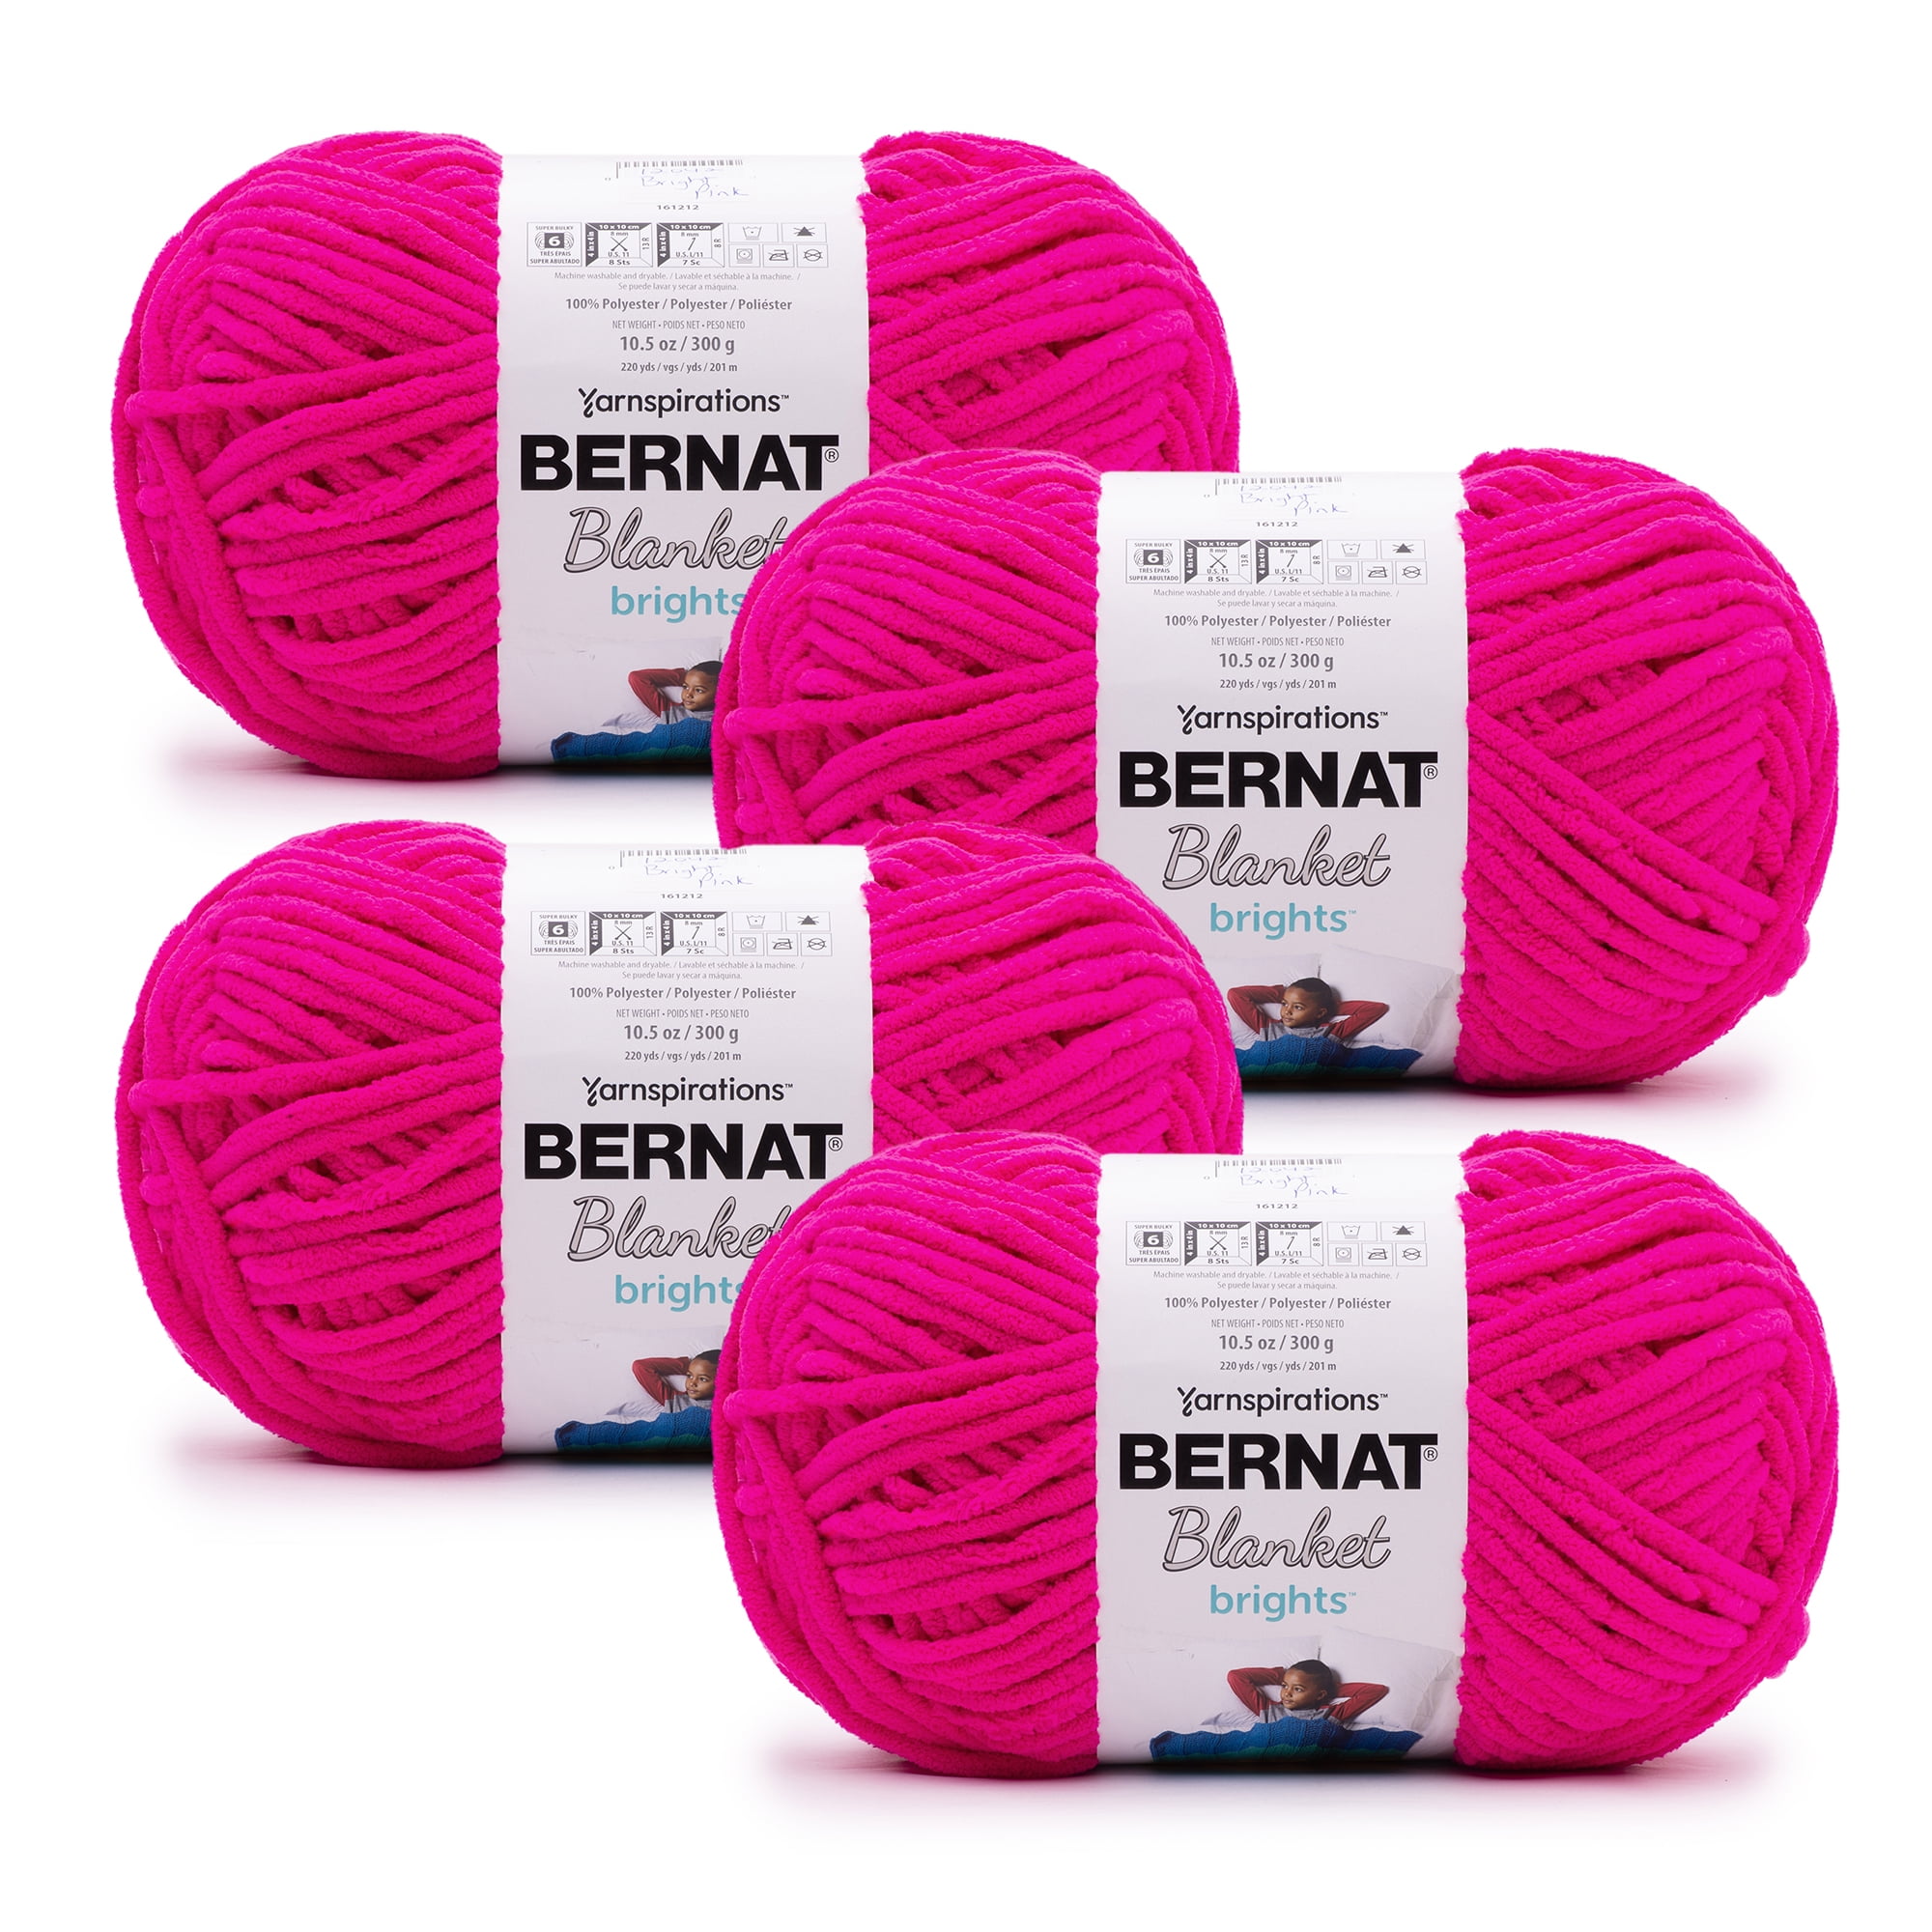 Bernat Blanket Brights 10.5oz—Bag of 2 Yarn Pack